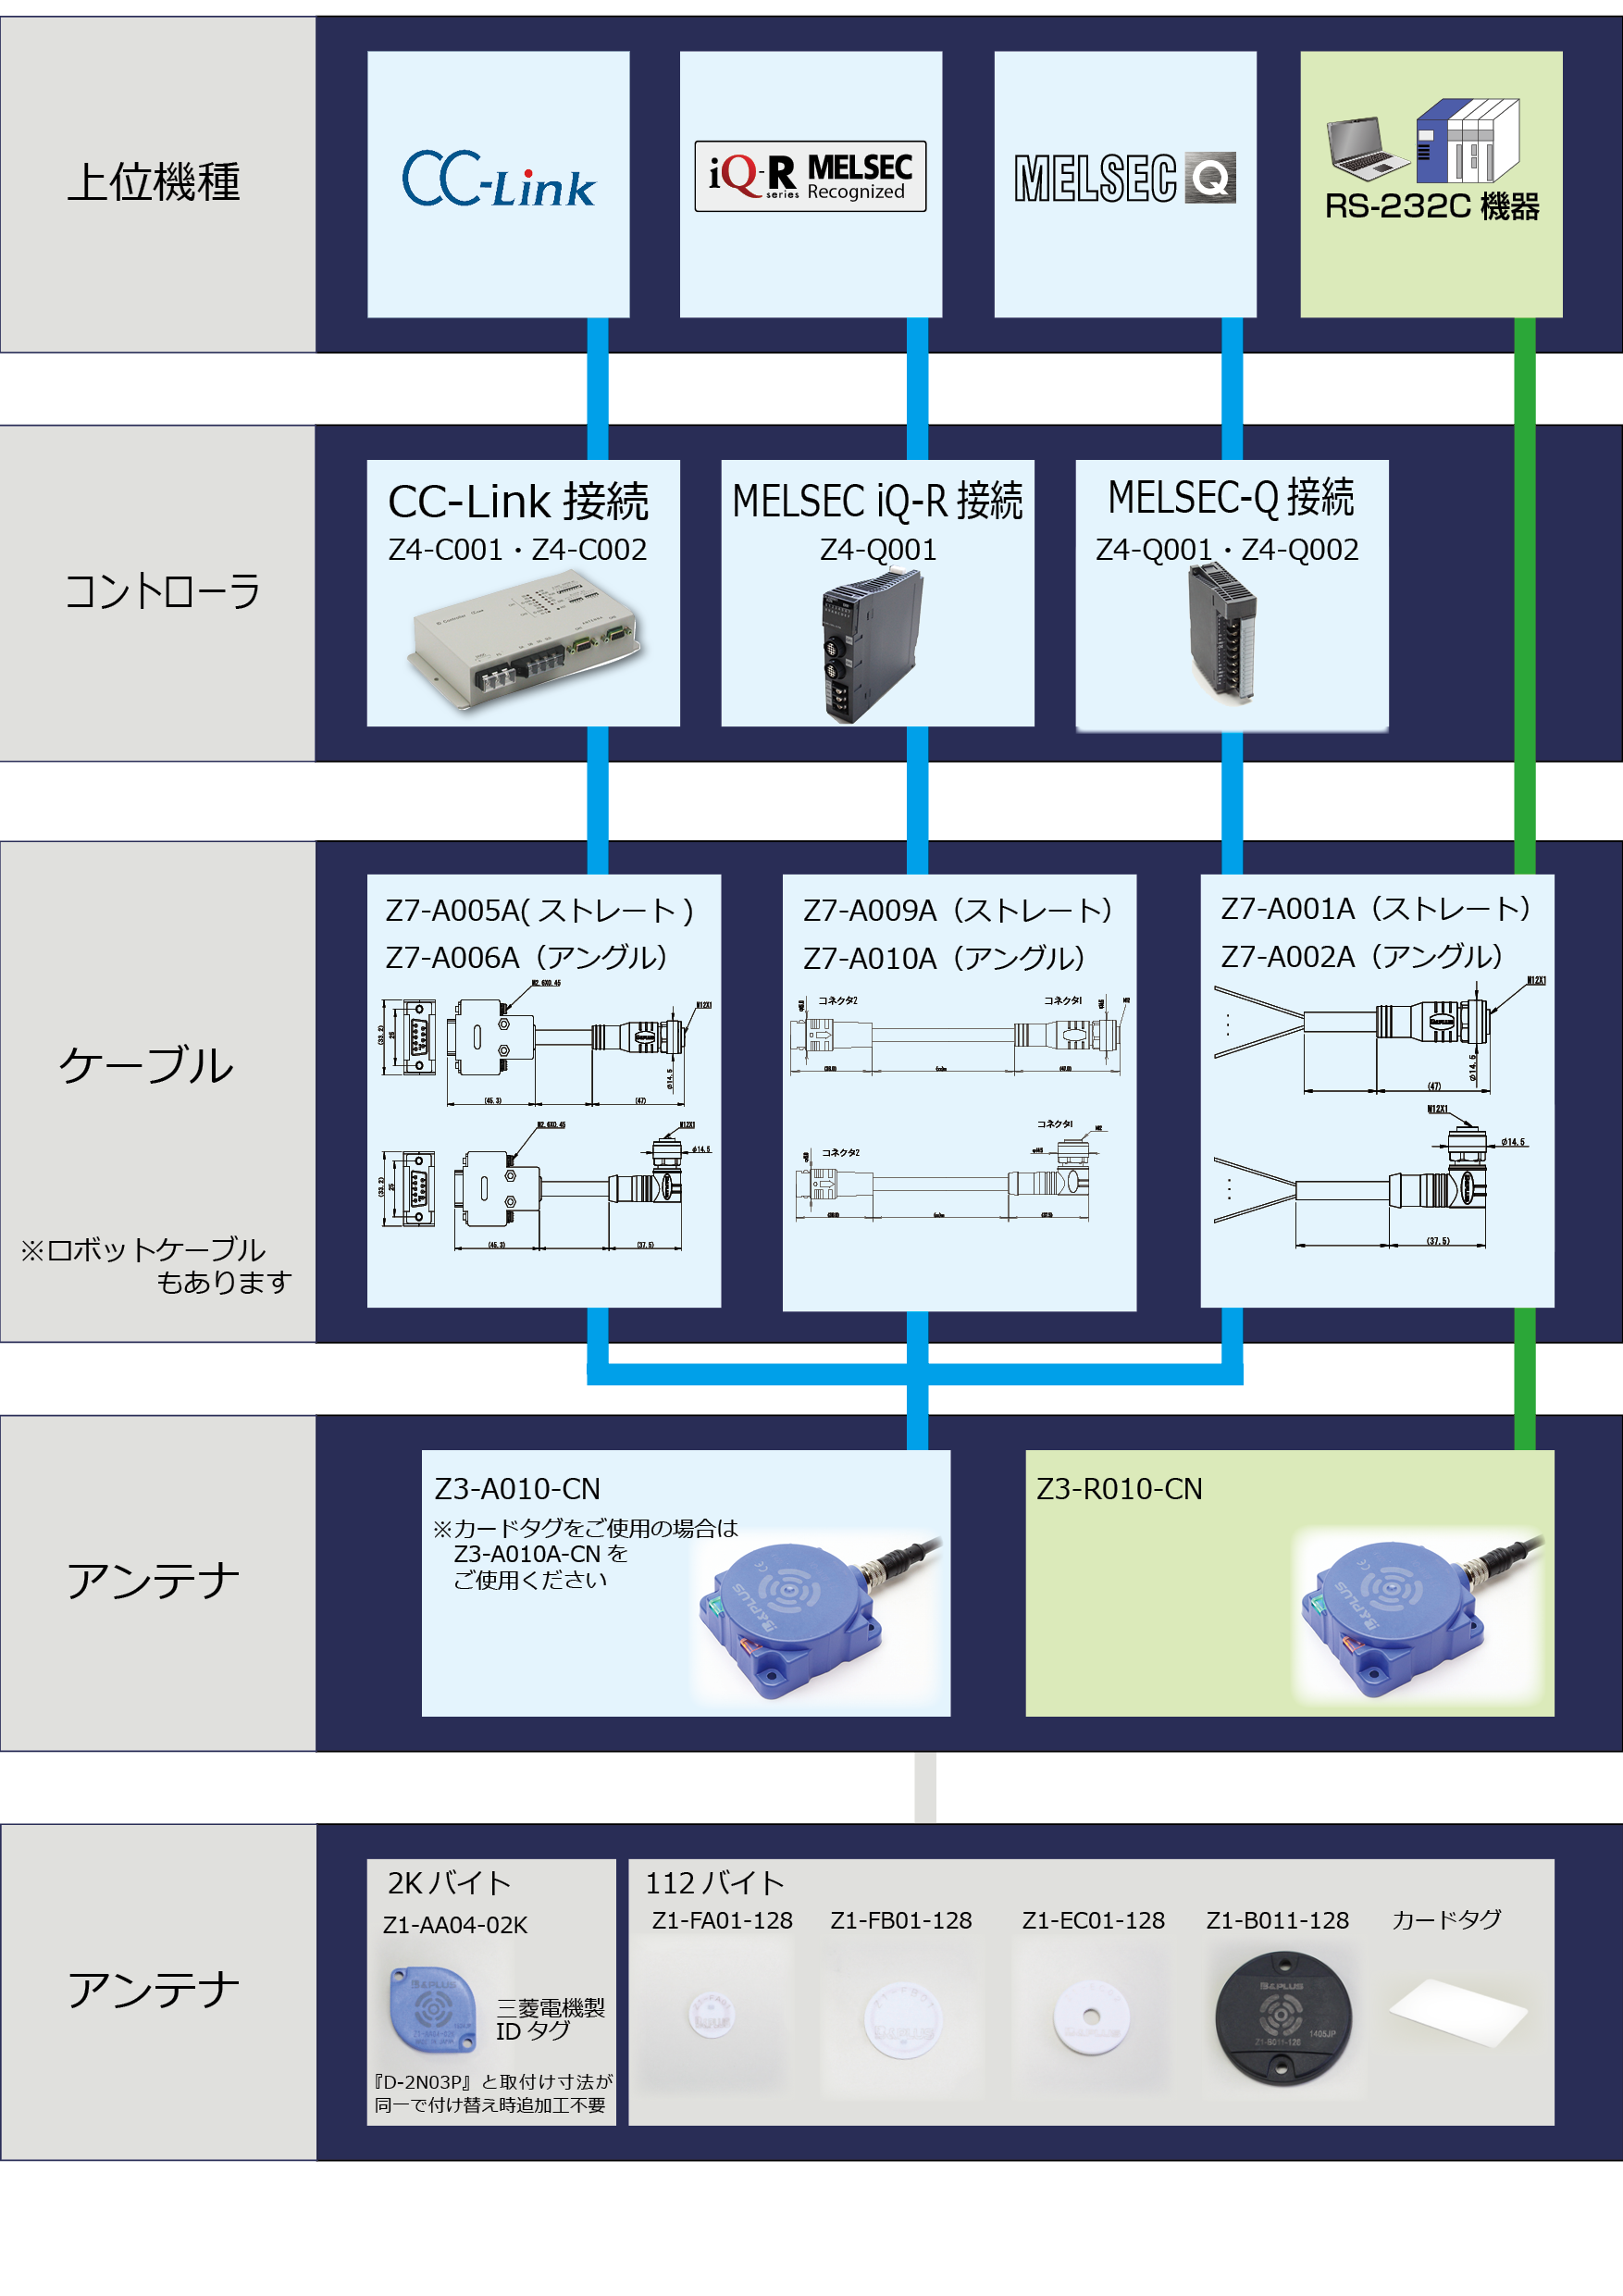 三菱電機パートナー B&PLUS RFIDシステム【Zシリーズ】